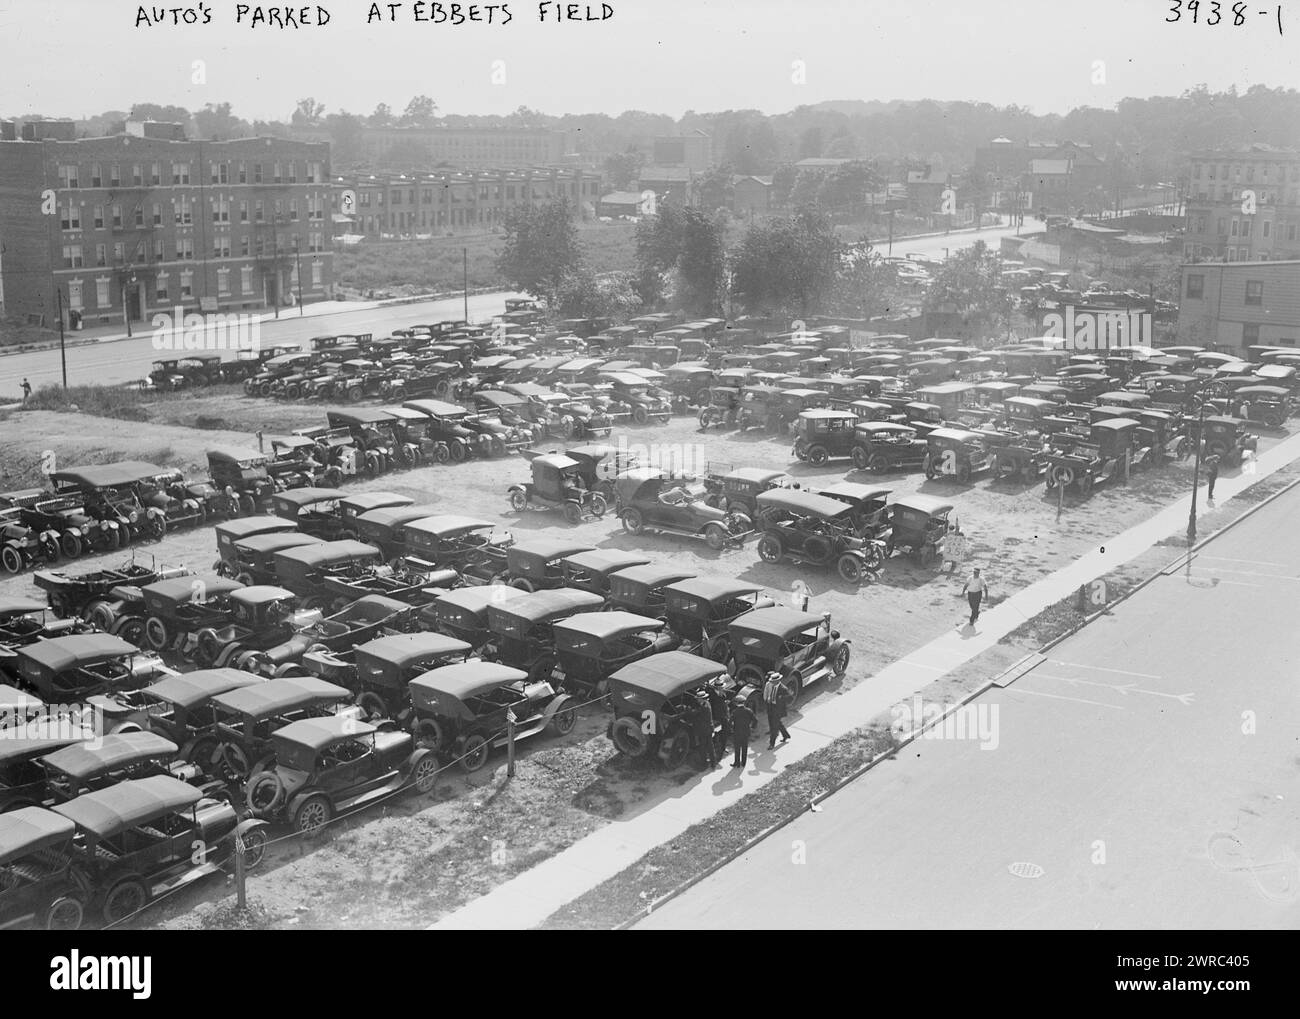 Auto's parked at Ebbets Field, 1916, Glass negatives, 1 negative: glass Stock Photo